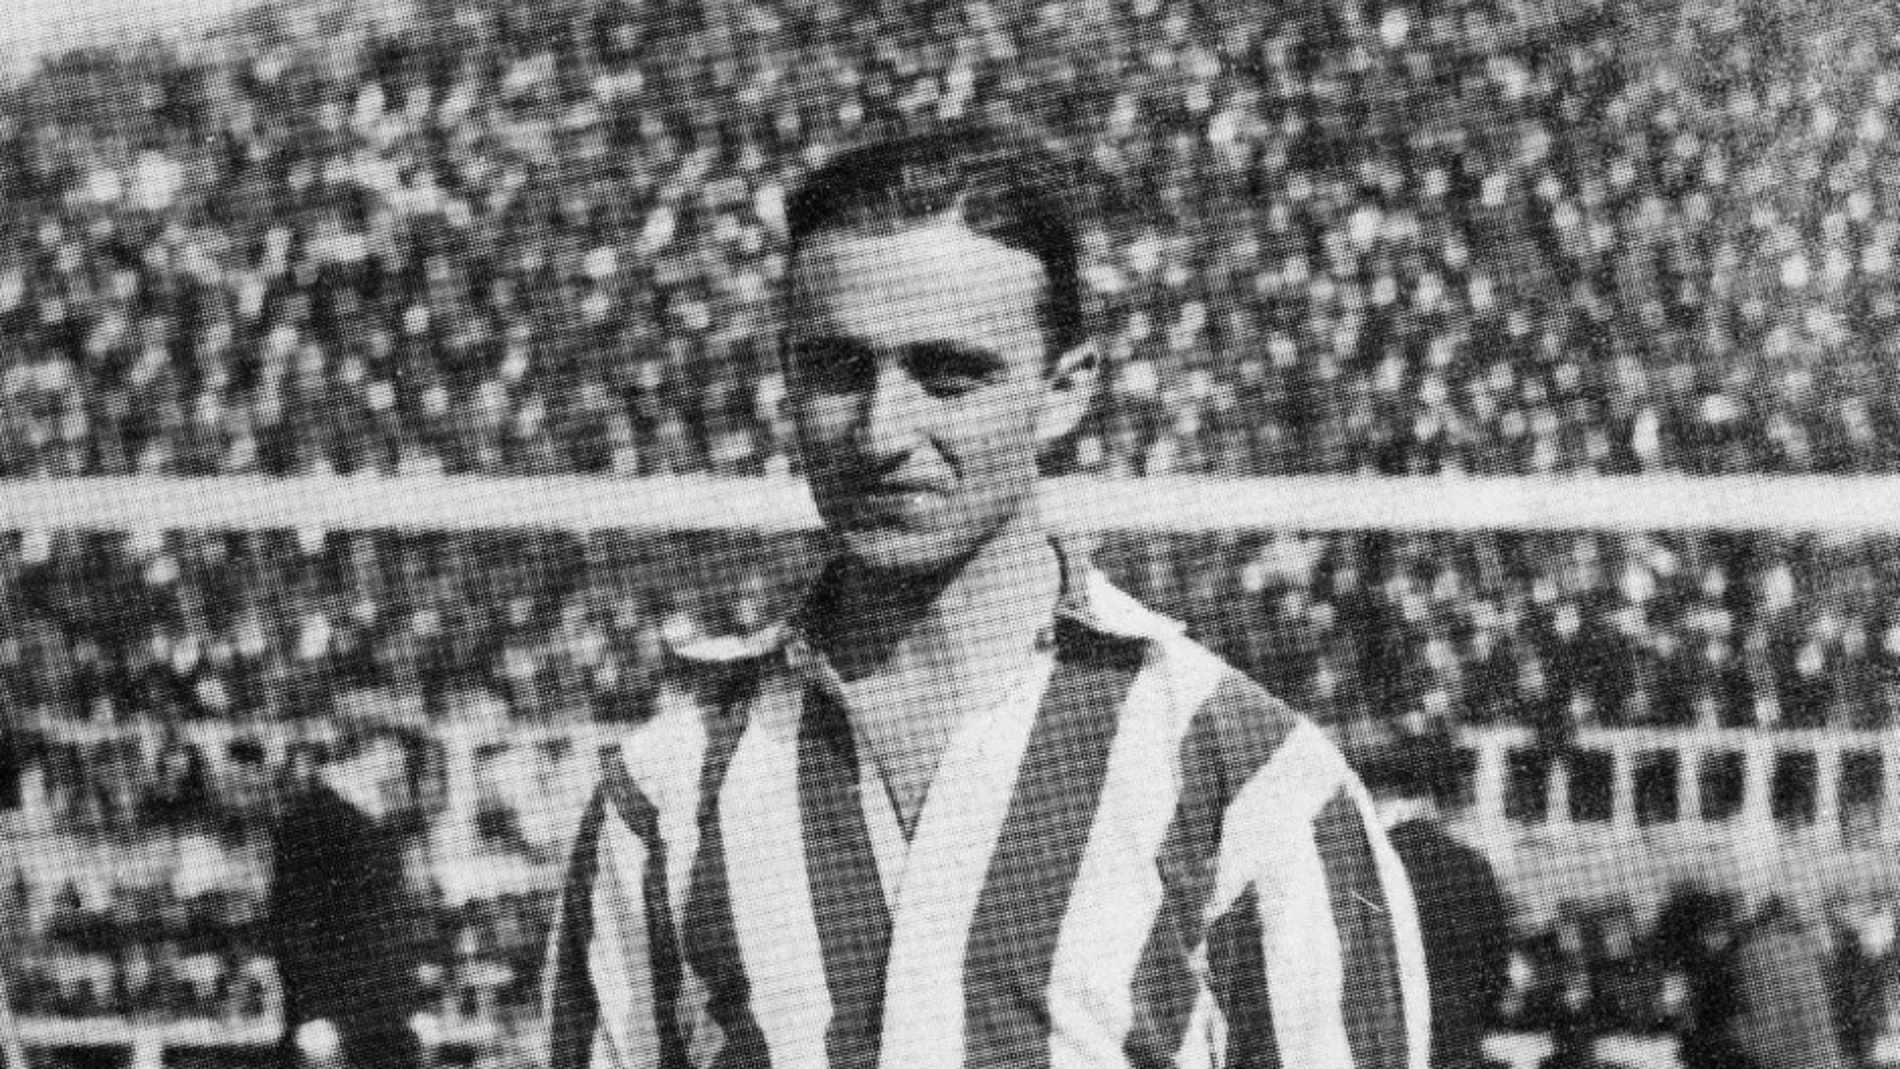 Triana fue el primer jugador en marcar un gol en el Stadium Metropolitano. Ganó el Athletic Club de Madrid a la Real Sociedad por 2-1